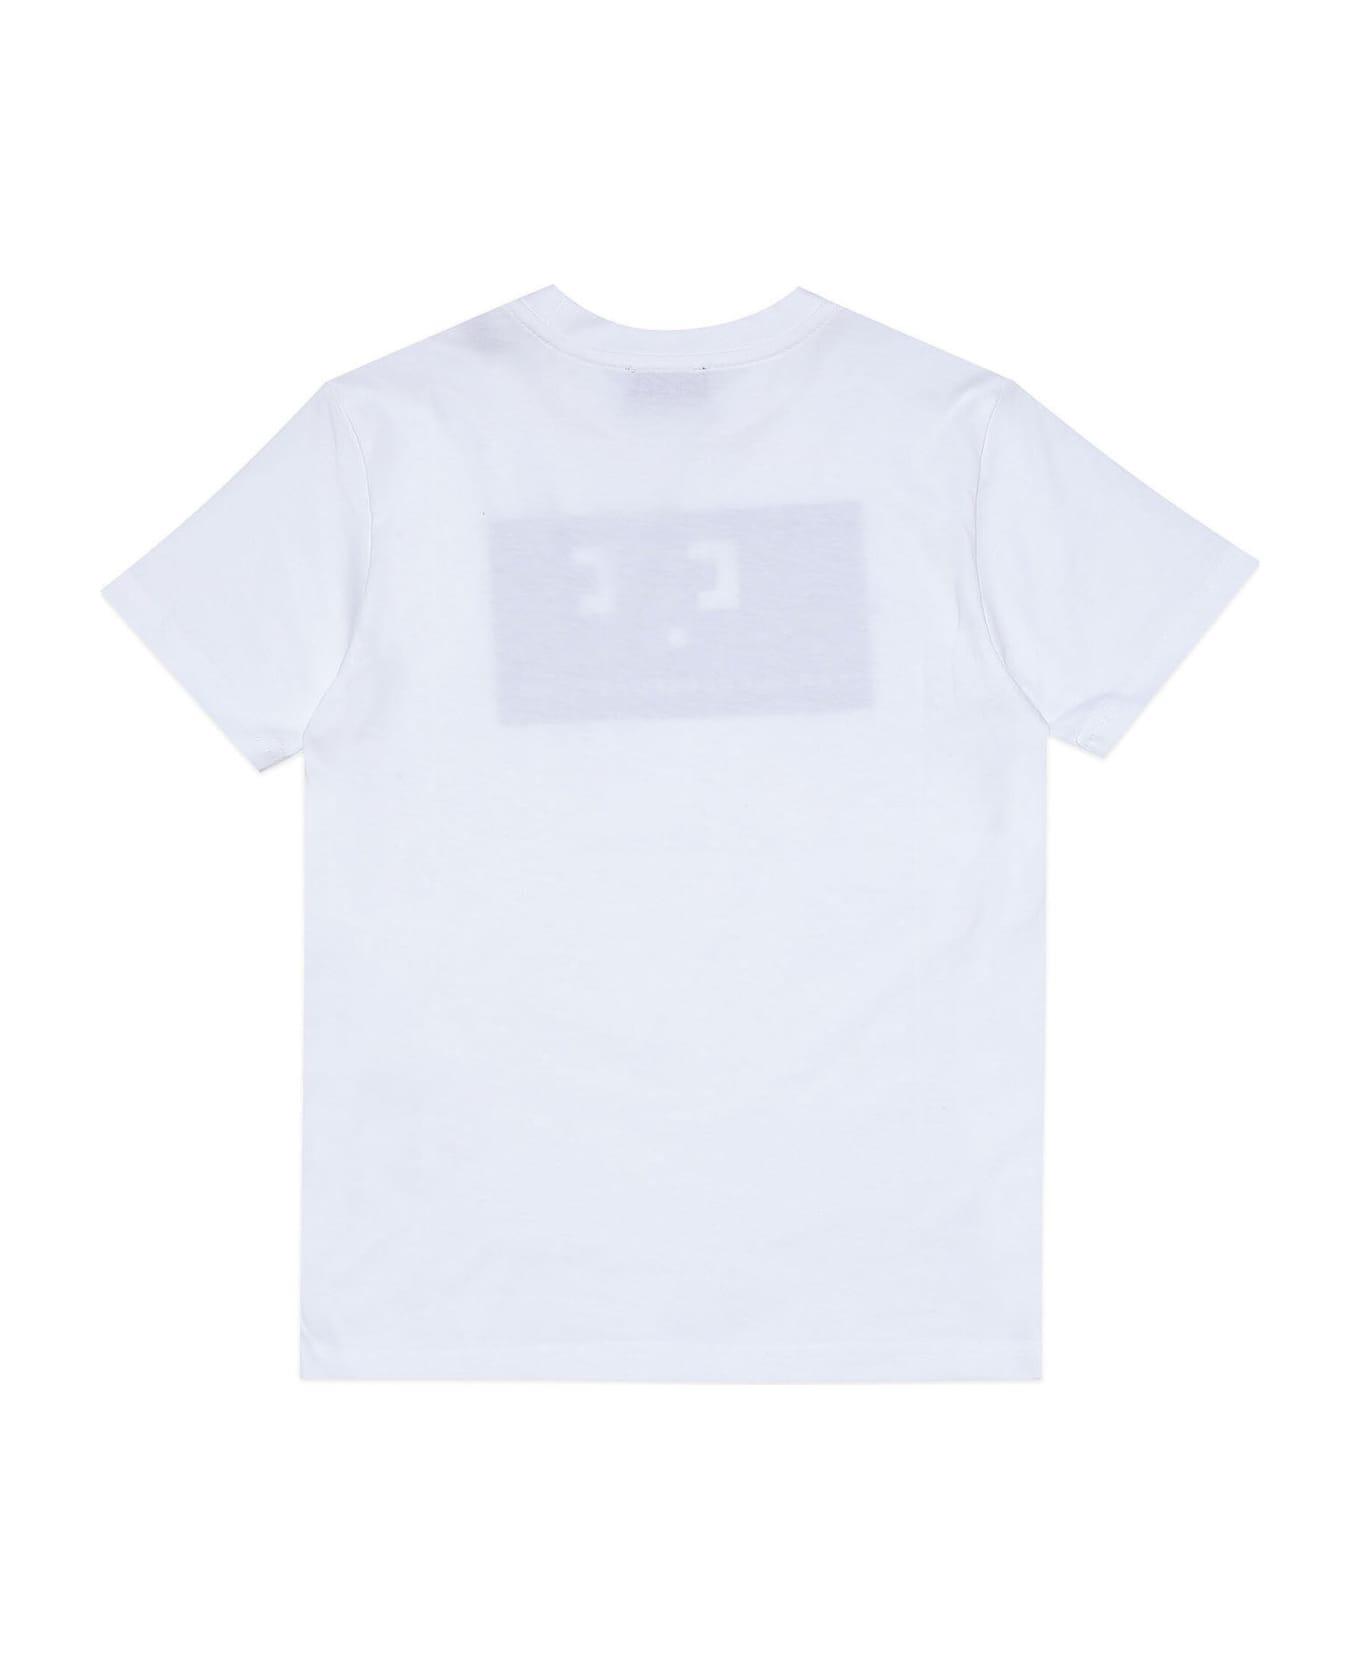 Diesel Tmiley T-shirt Diesel - White